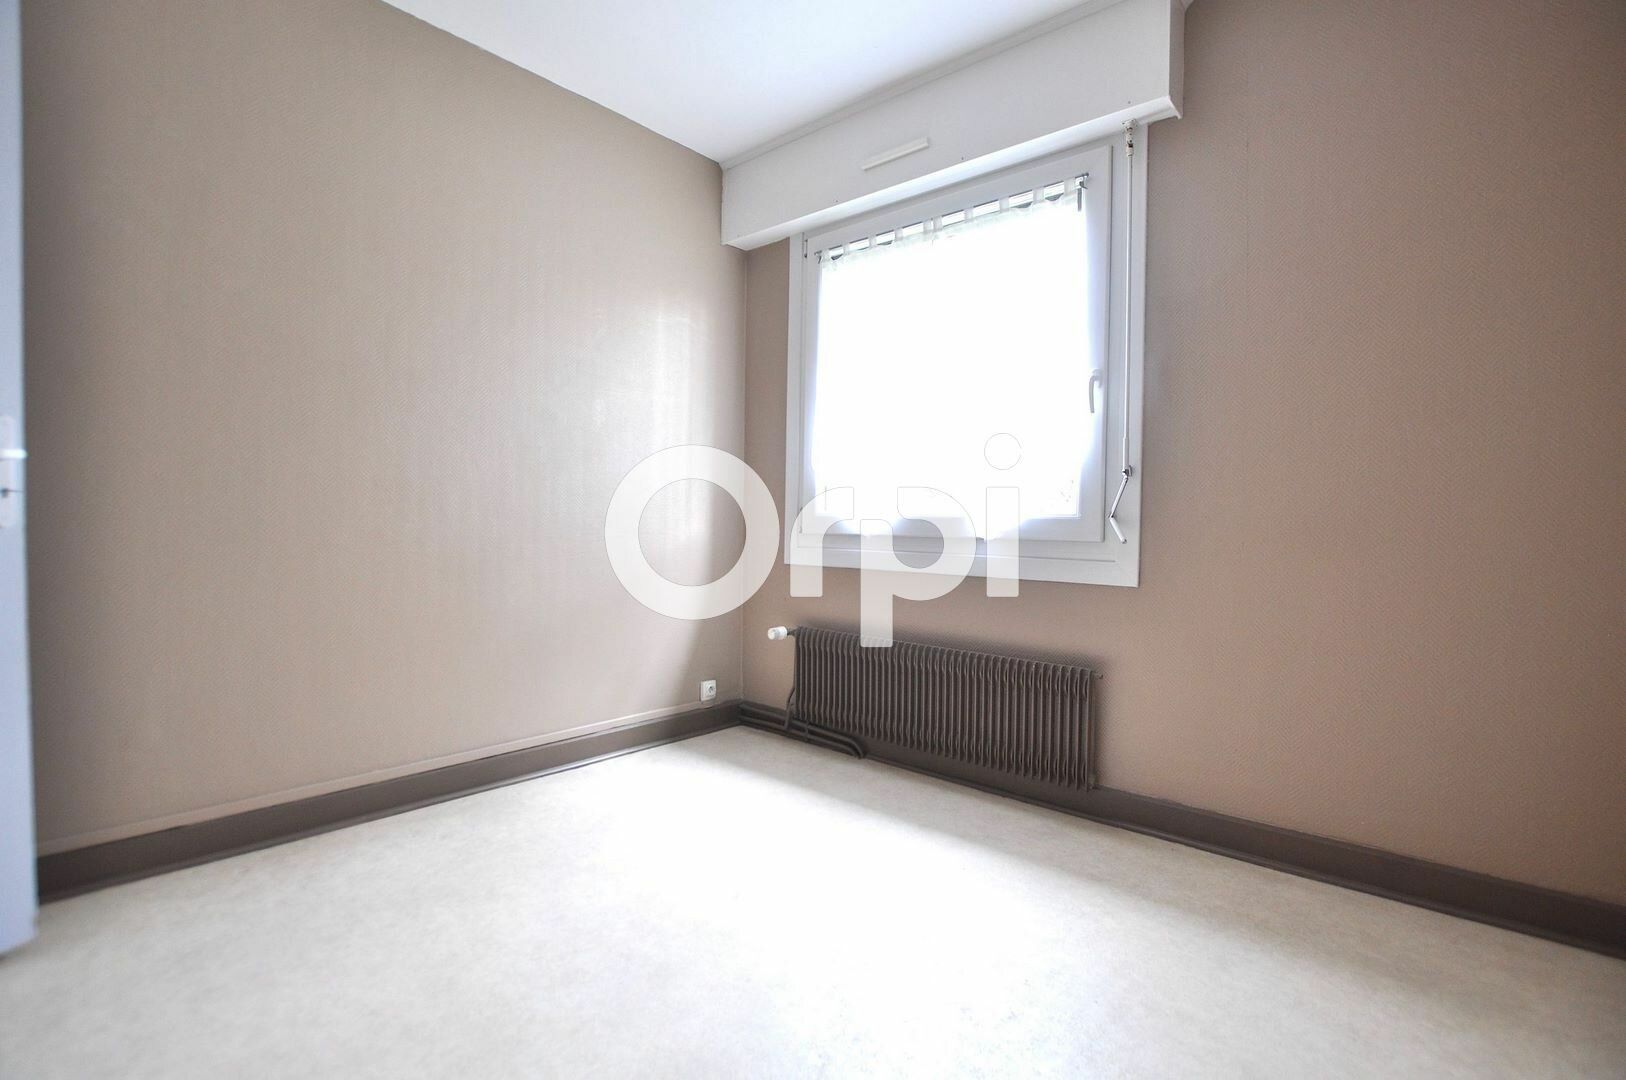 Appartement à vendre 3 58.01m2 à Dunkerque vignette-4